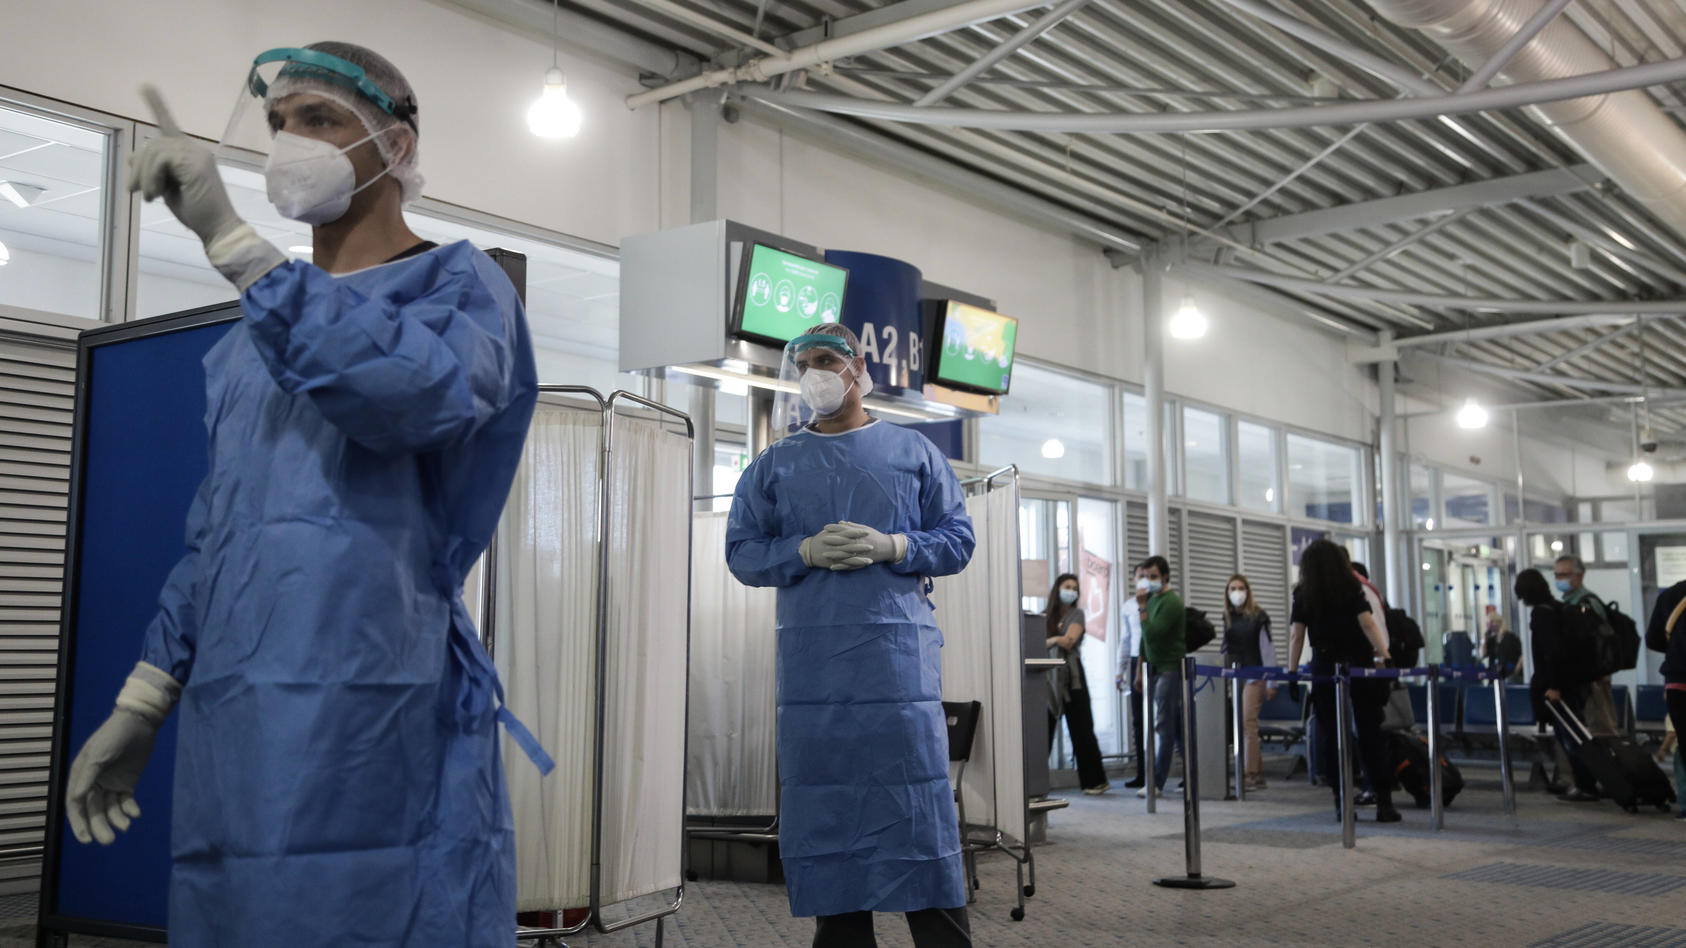  Momentaufnahme am Athener Flughafen Eleftherios venizelos: Während Griechenland sich darauf vorbereitet, seine Flughäfen für den internationalen Tourismus zu öffnen, sind sich die Gesundheitsbehörden des Risikos eines Aufflammens der Coronavirus-Epi